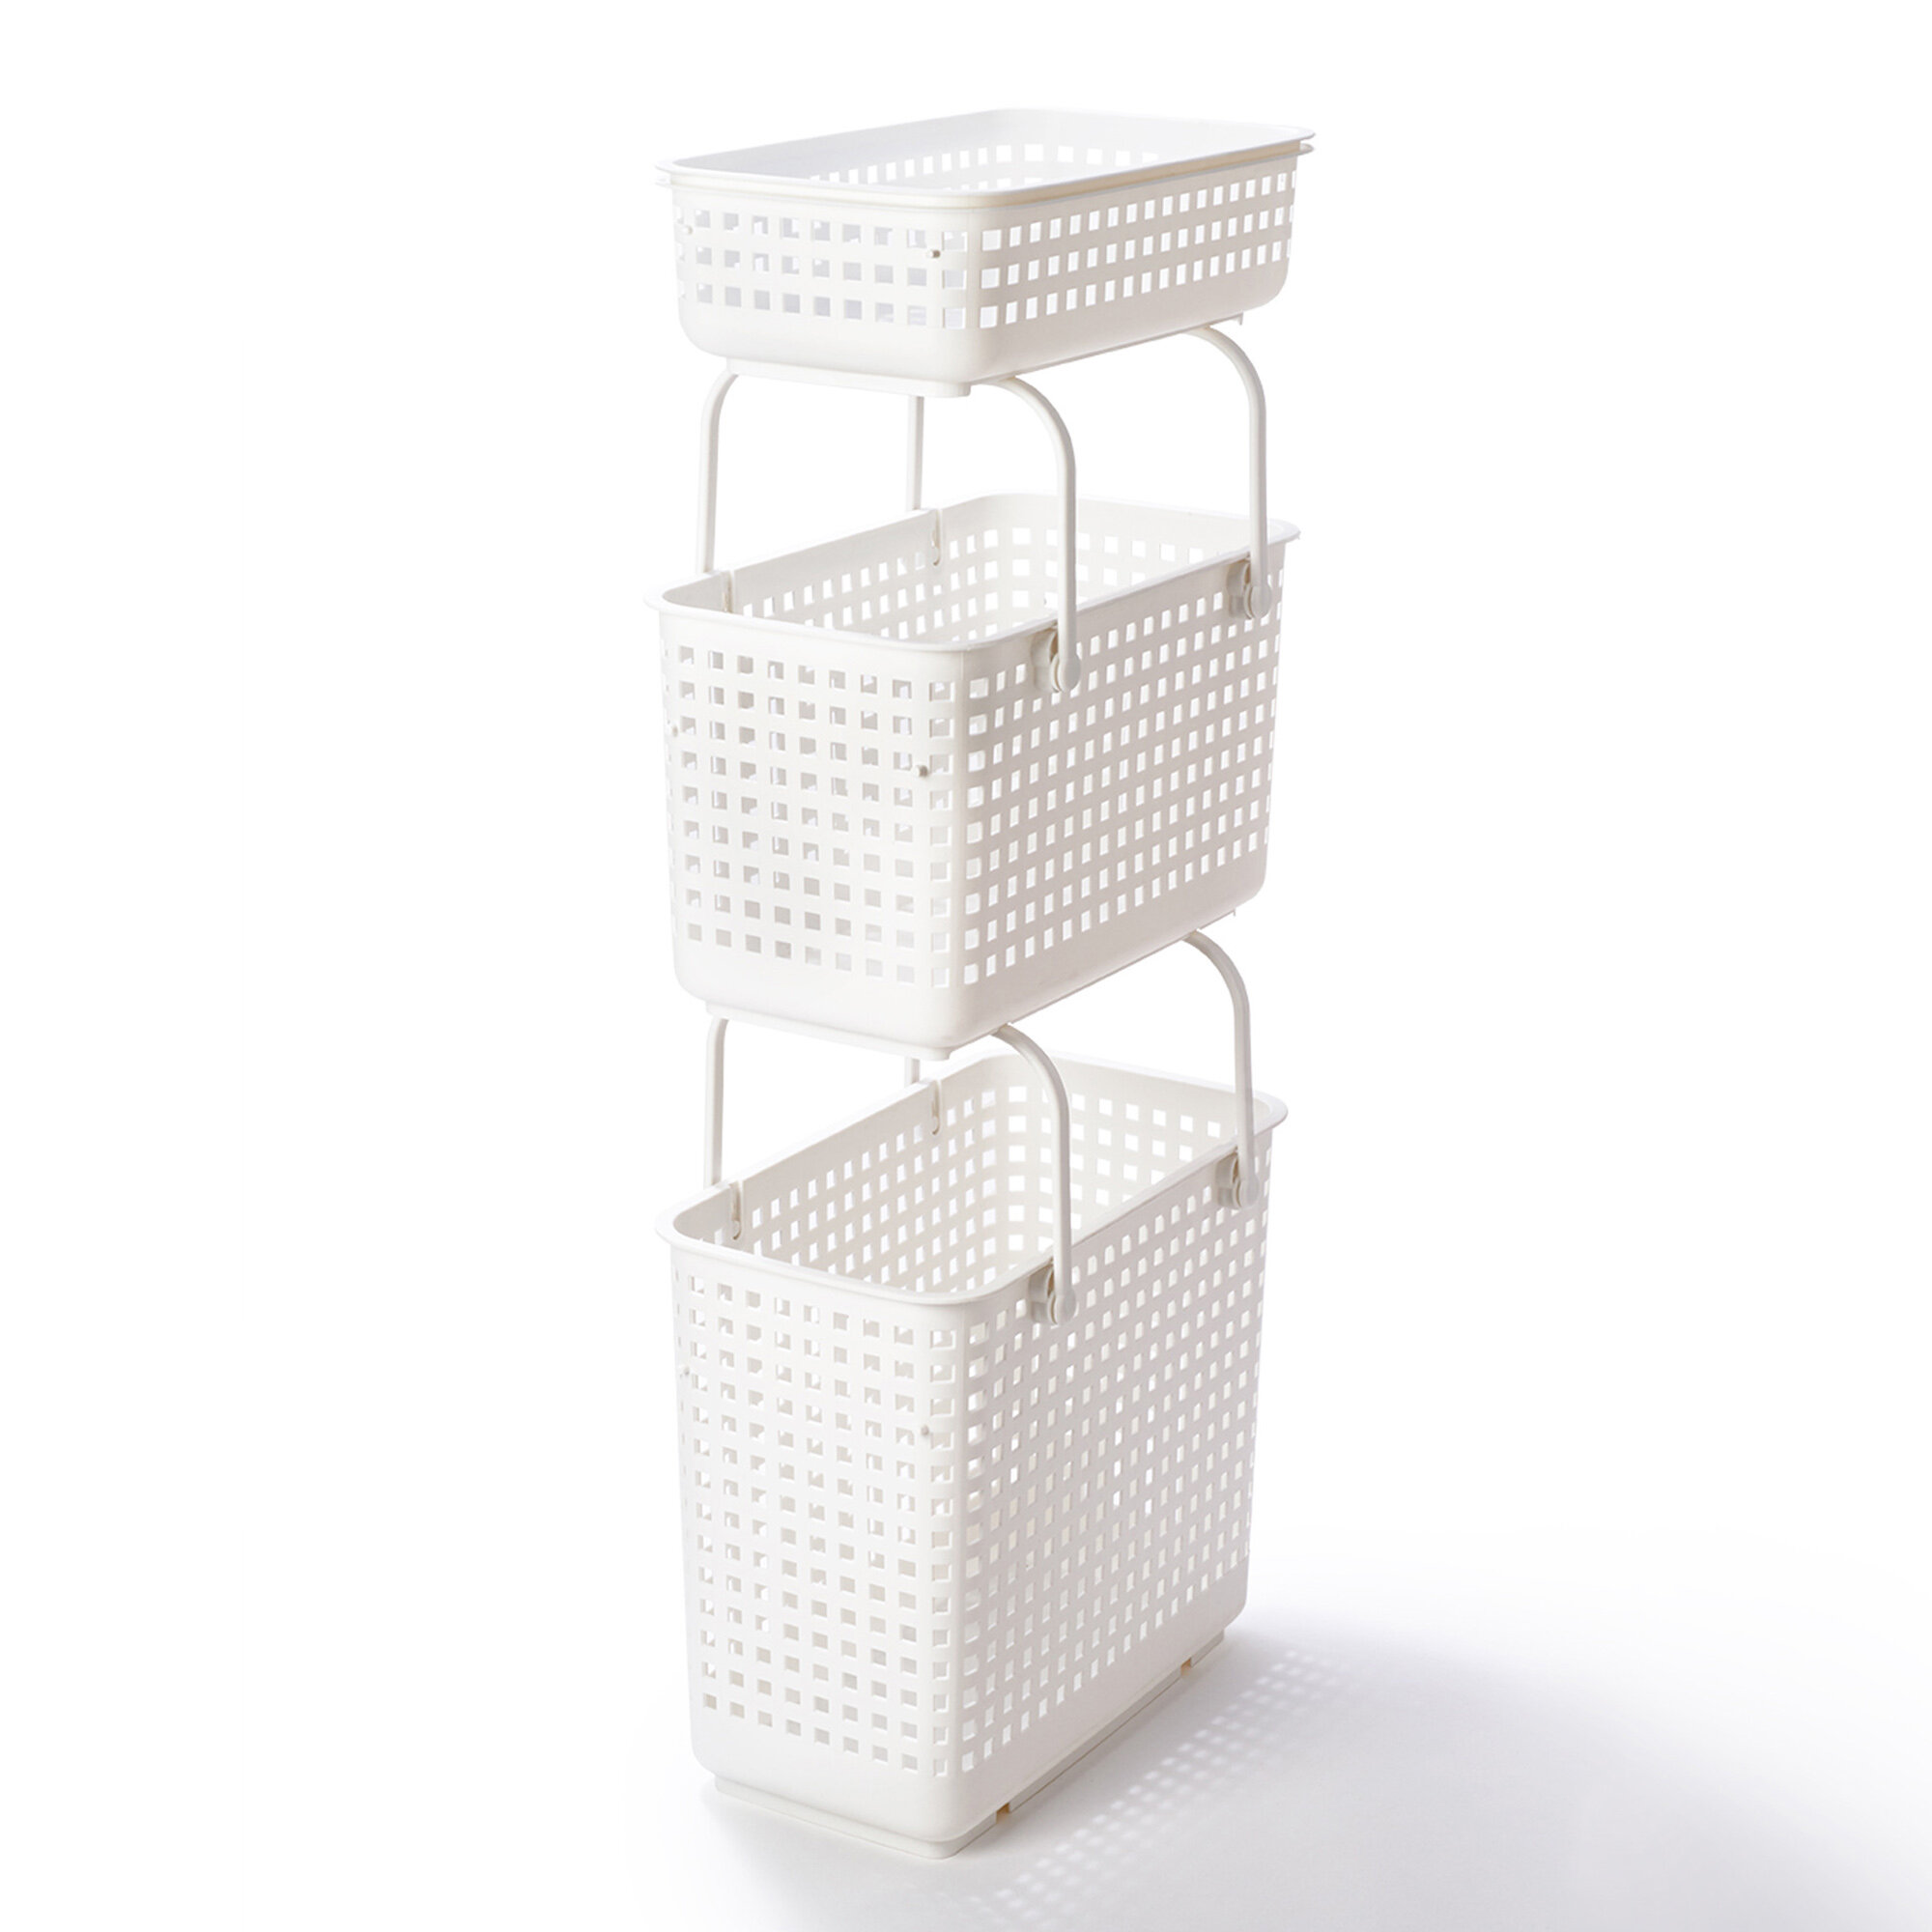 Like-It Modular Storage Baskets and Lids